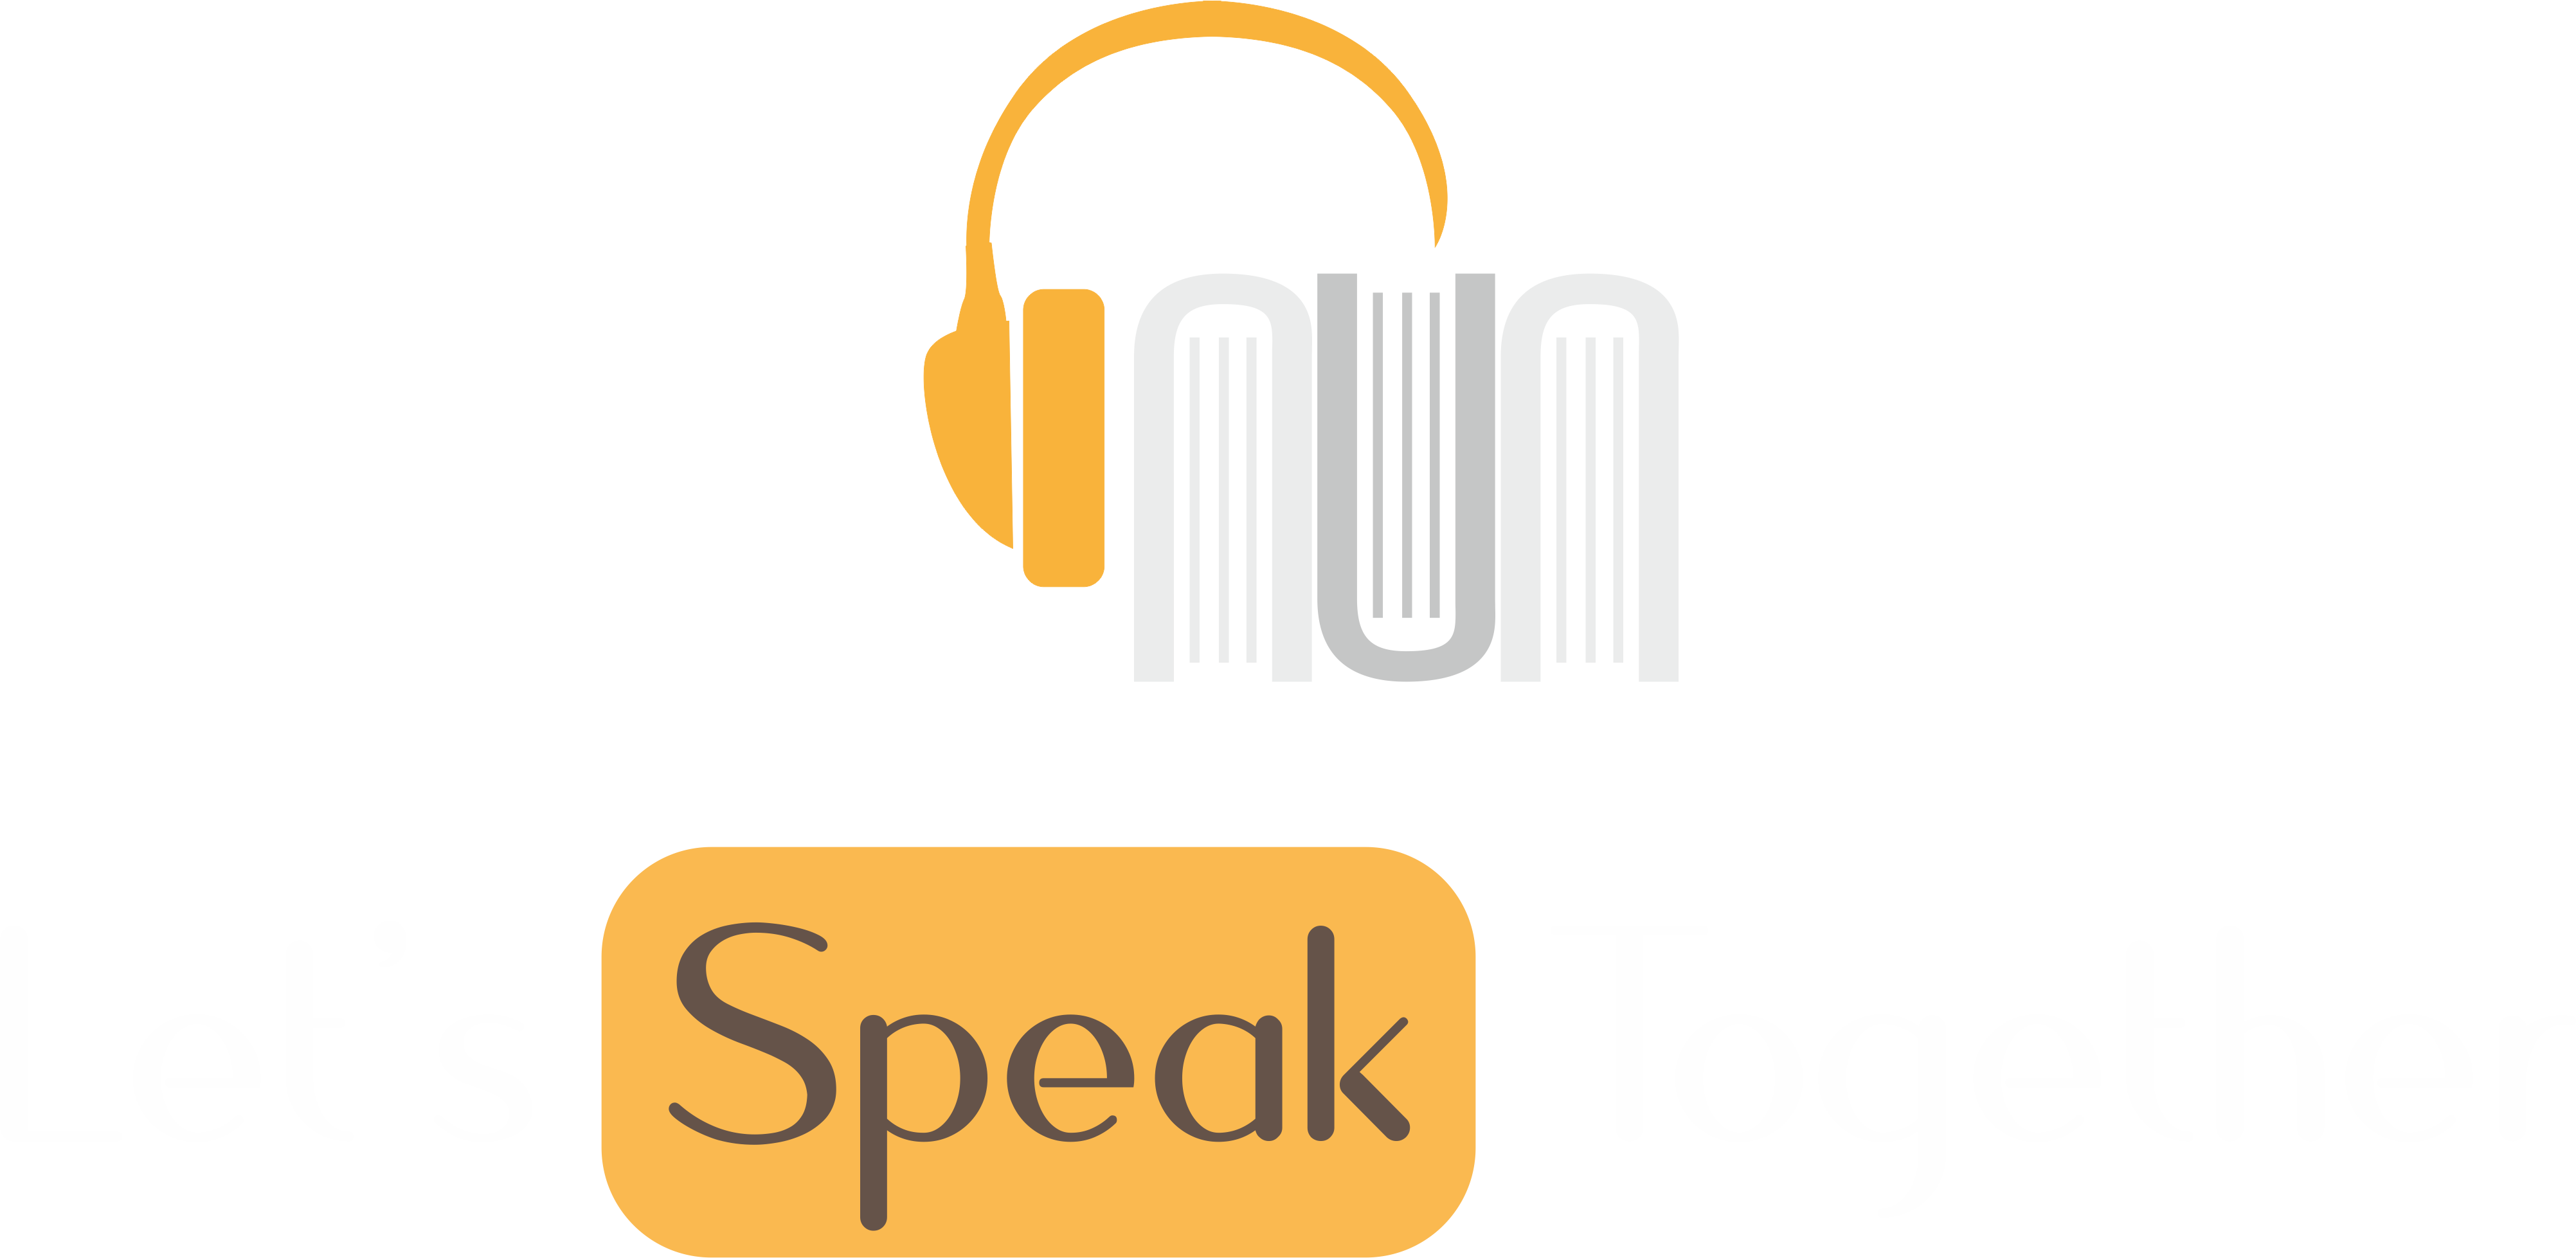 Let's Speak Together